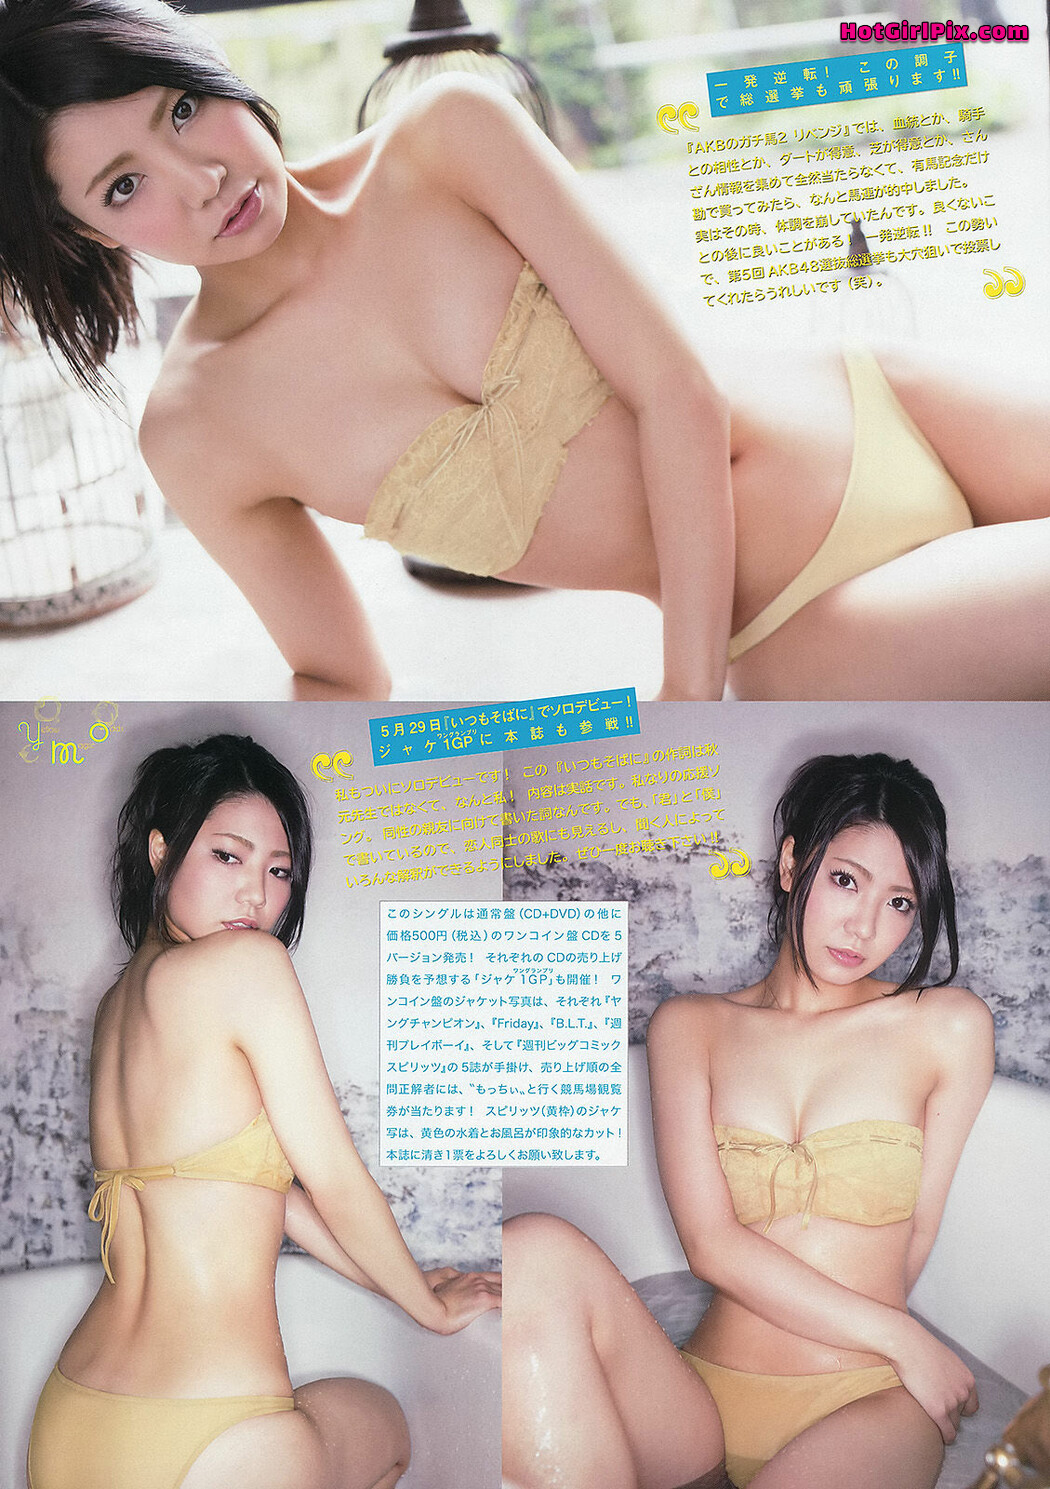 [Bejean On Line] Arisa Shirota - Private Bejean Jogakkan Cover Photo